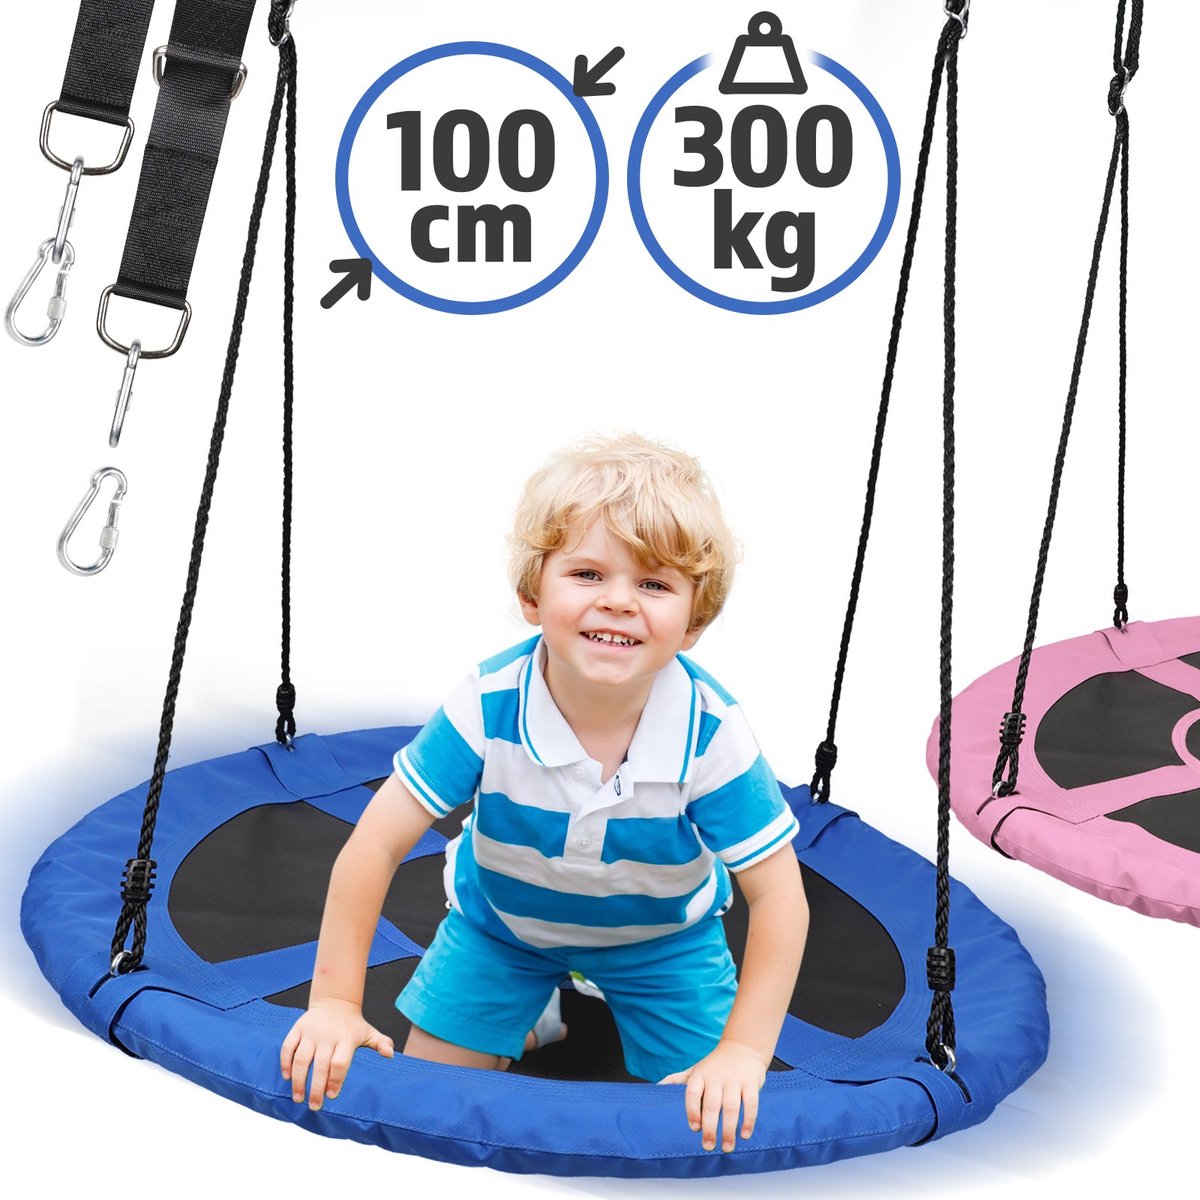 Physionics - Nestschommel voor Buiten/Binnen - Maximale Belasting 300kg - Diameter 100cm - Ronde schommel - Bordschommel - Tuinschommel - Hangschommel - Schommel voor meerdere kinderen - Blauw